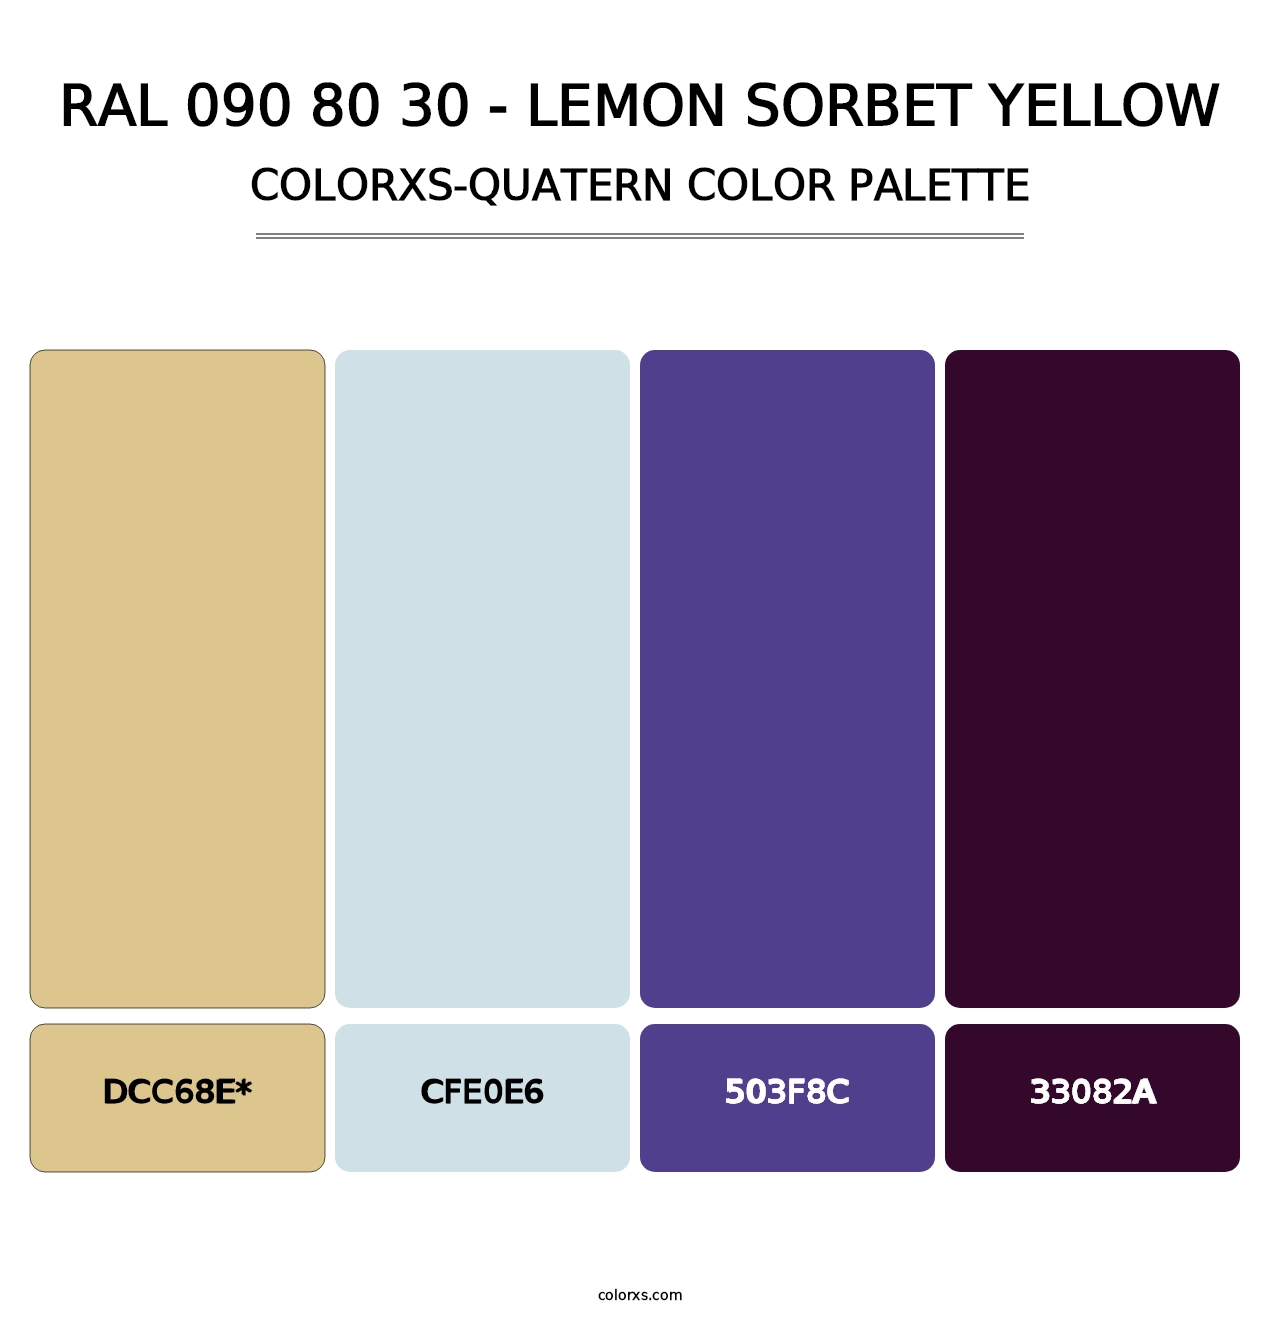 RAL 090 80 30 - Lemon Sorbet Yellow - Colorxs Quatern Palette